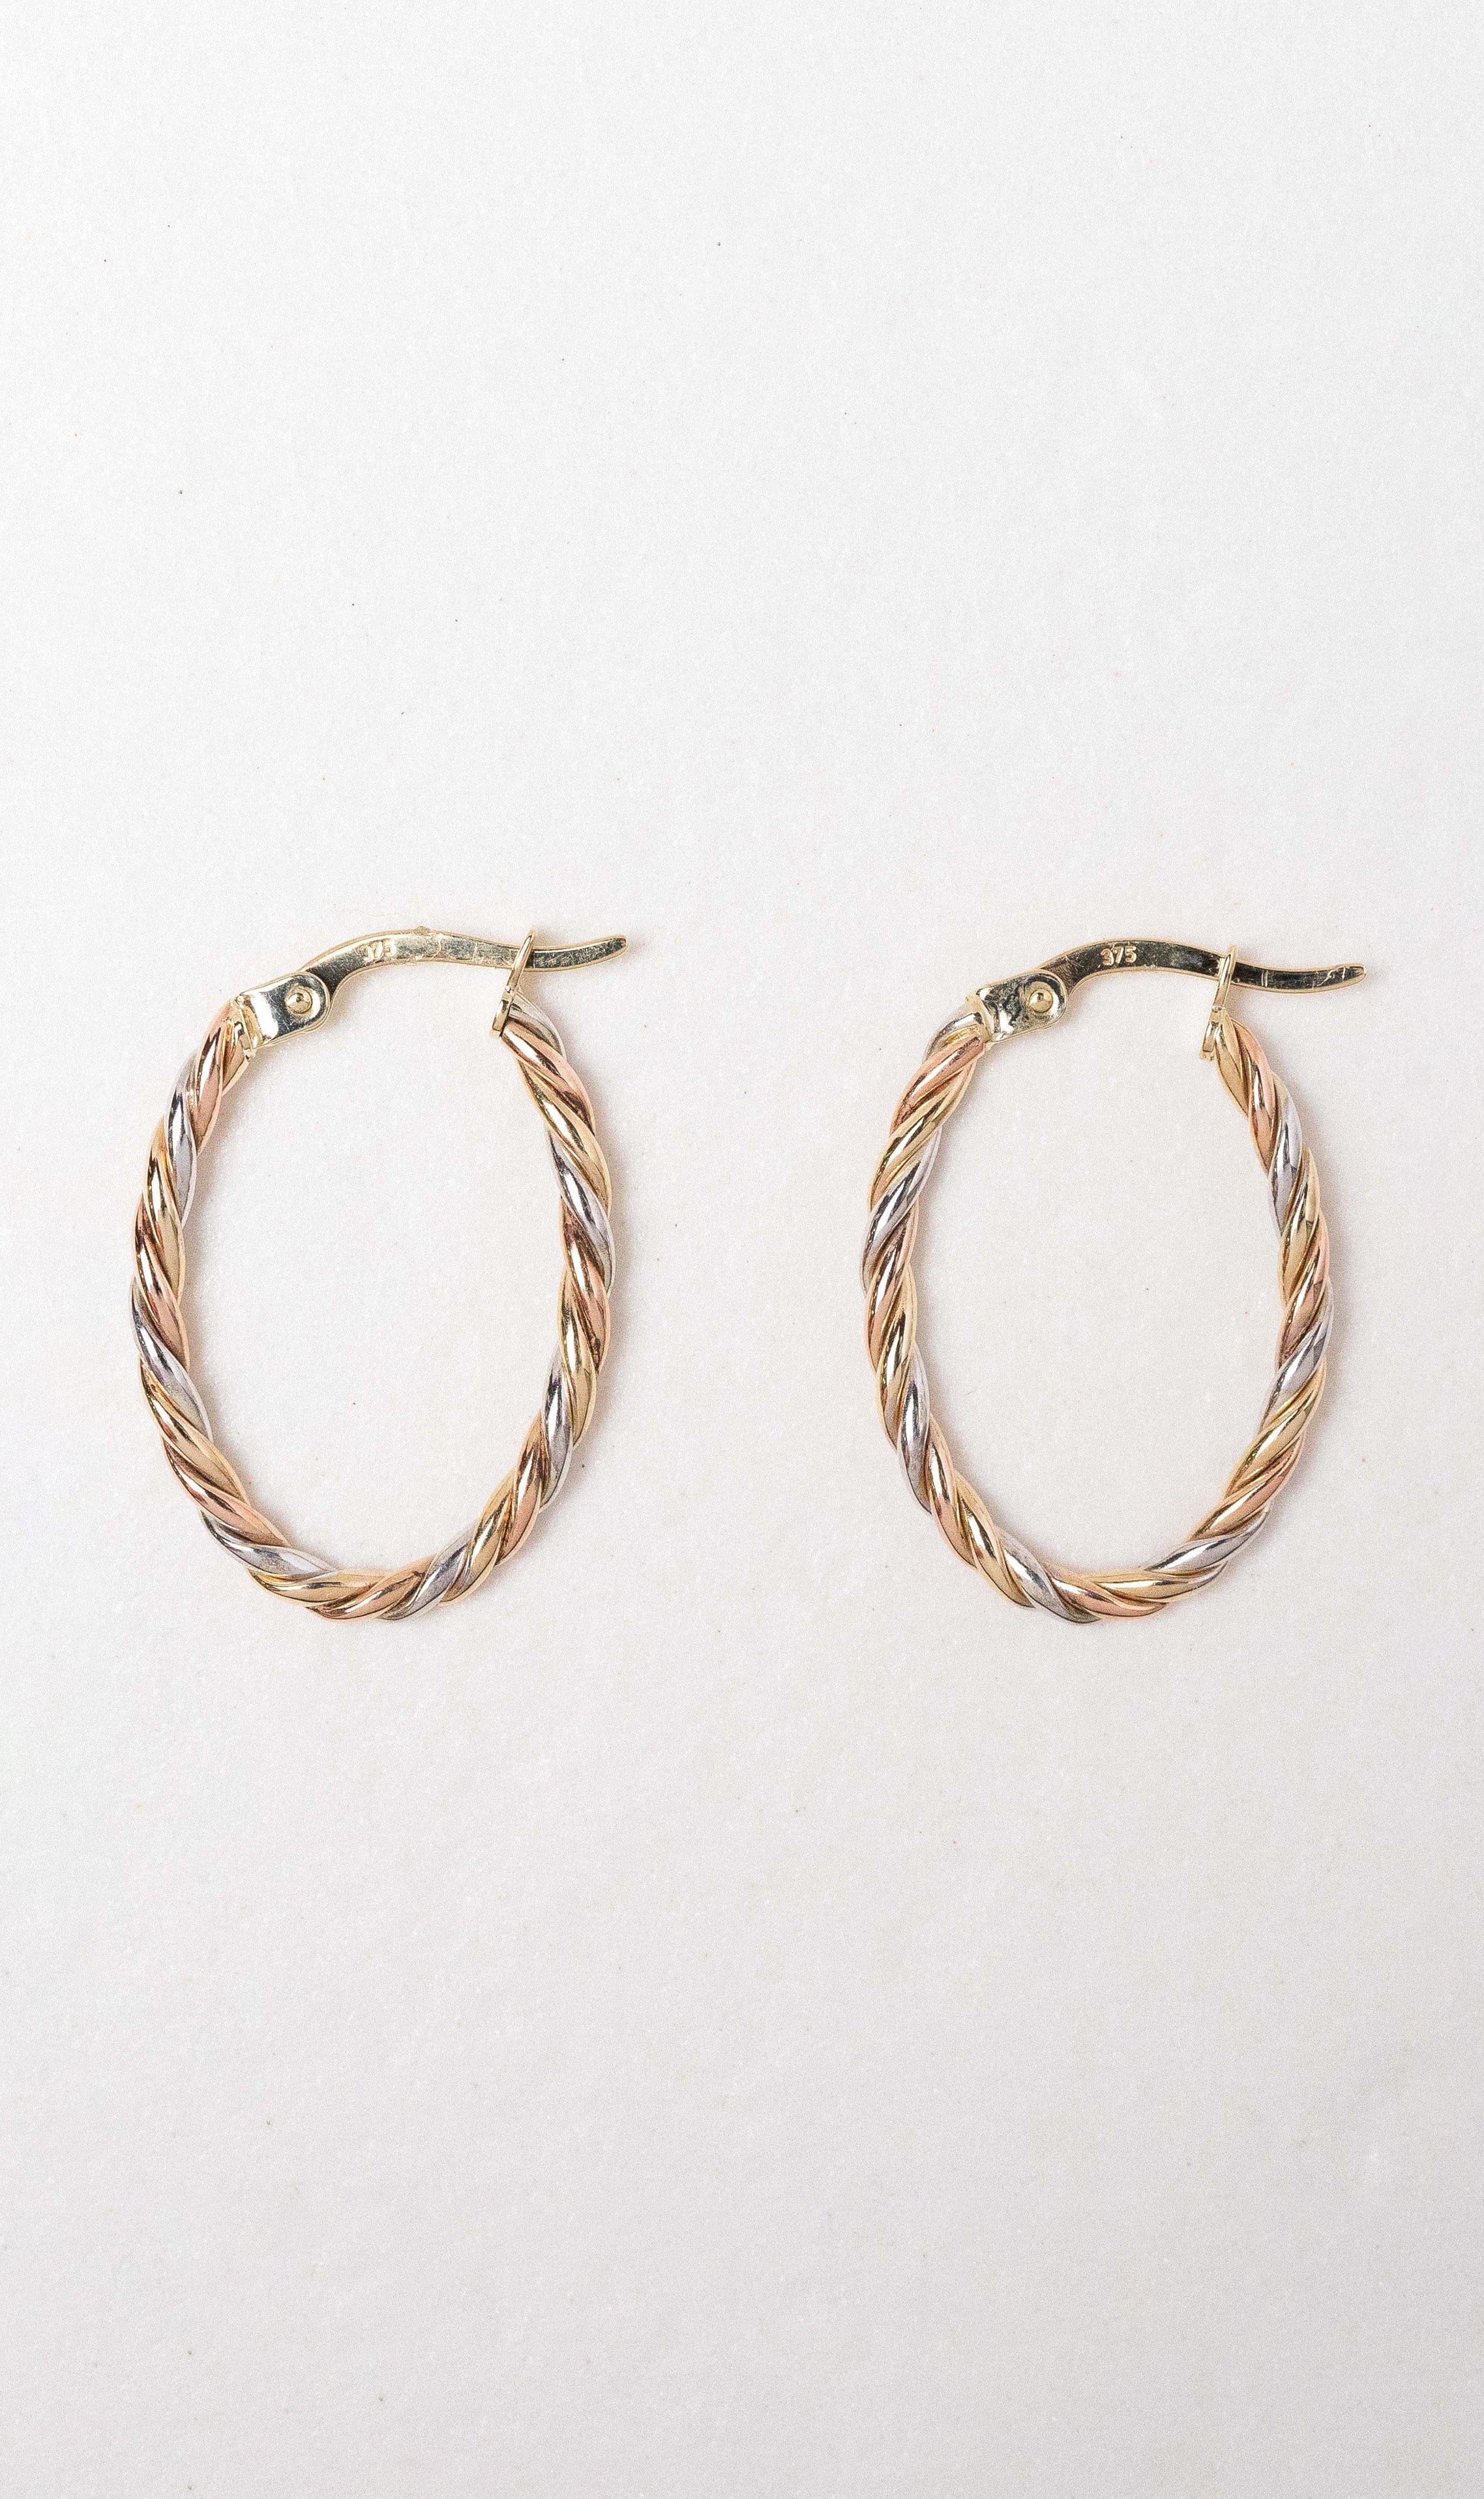 Hogans Family Jewellers 9K YWRG Twist Hoop Earrings